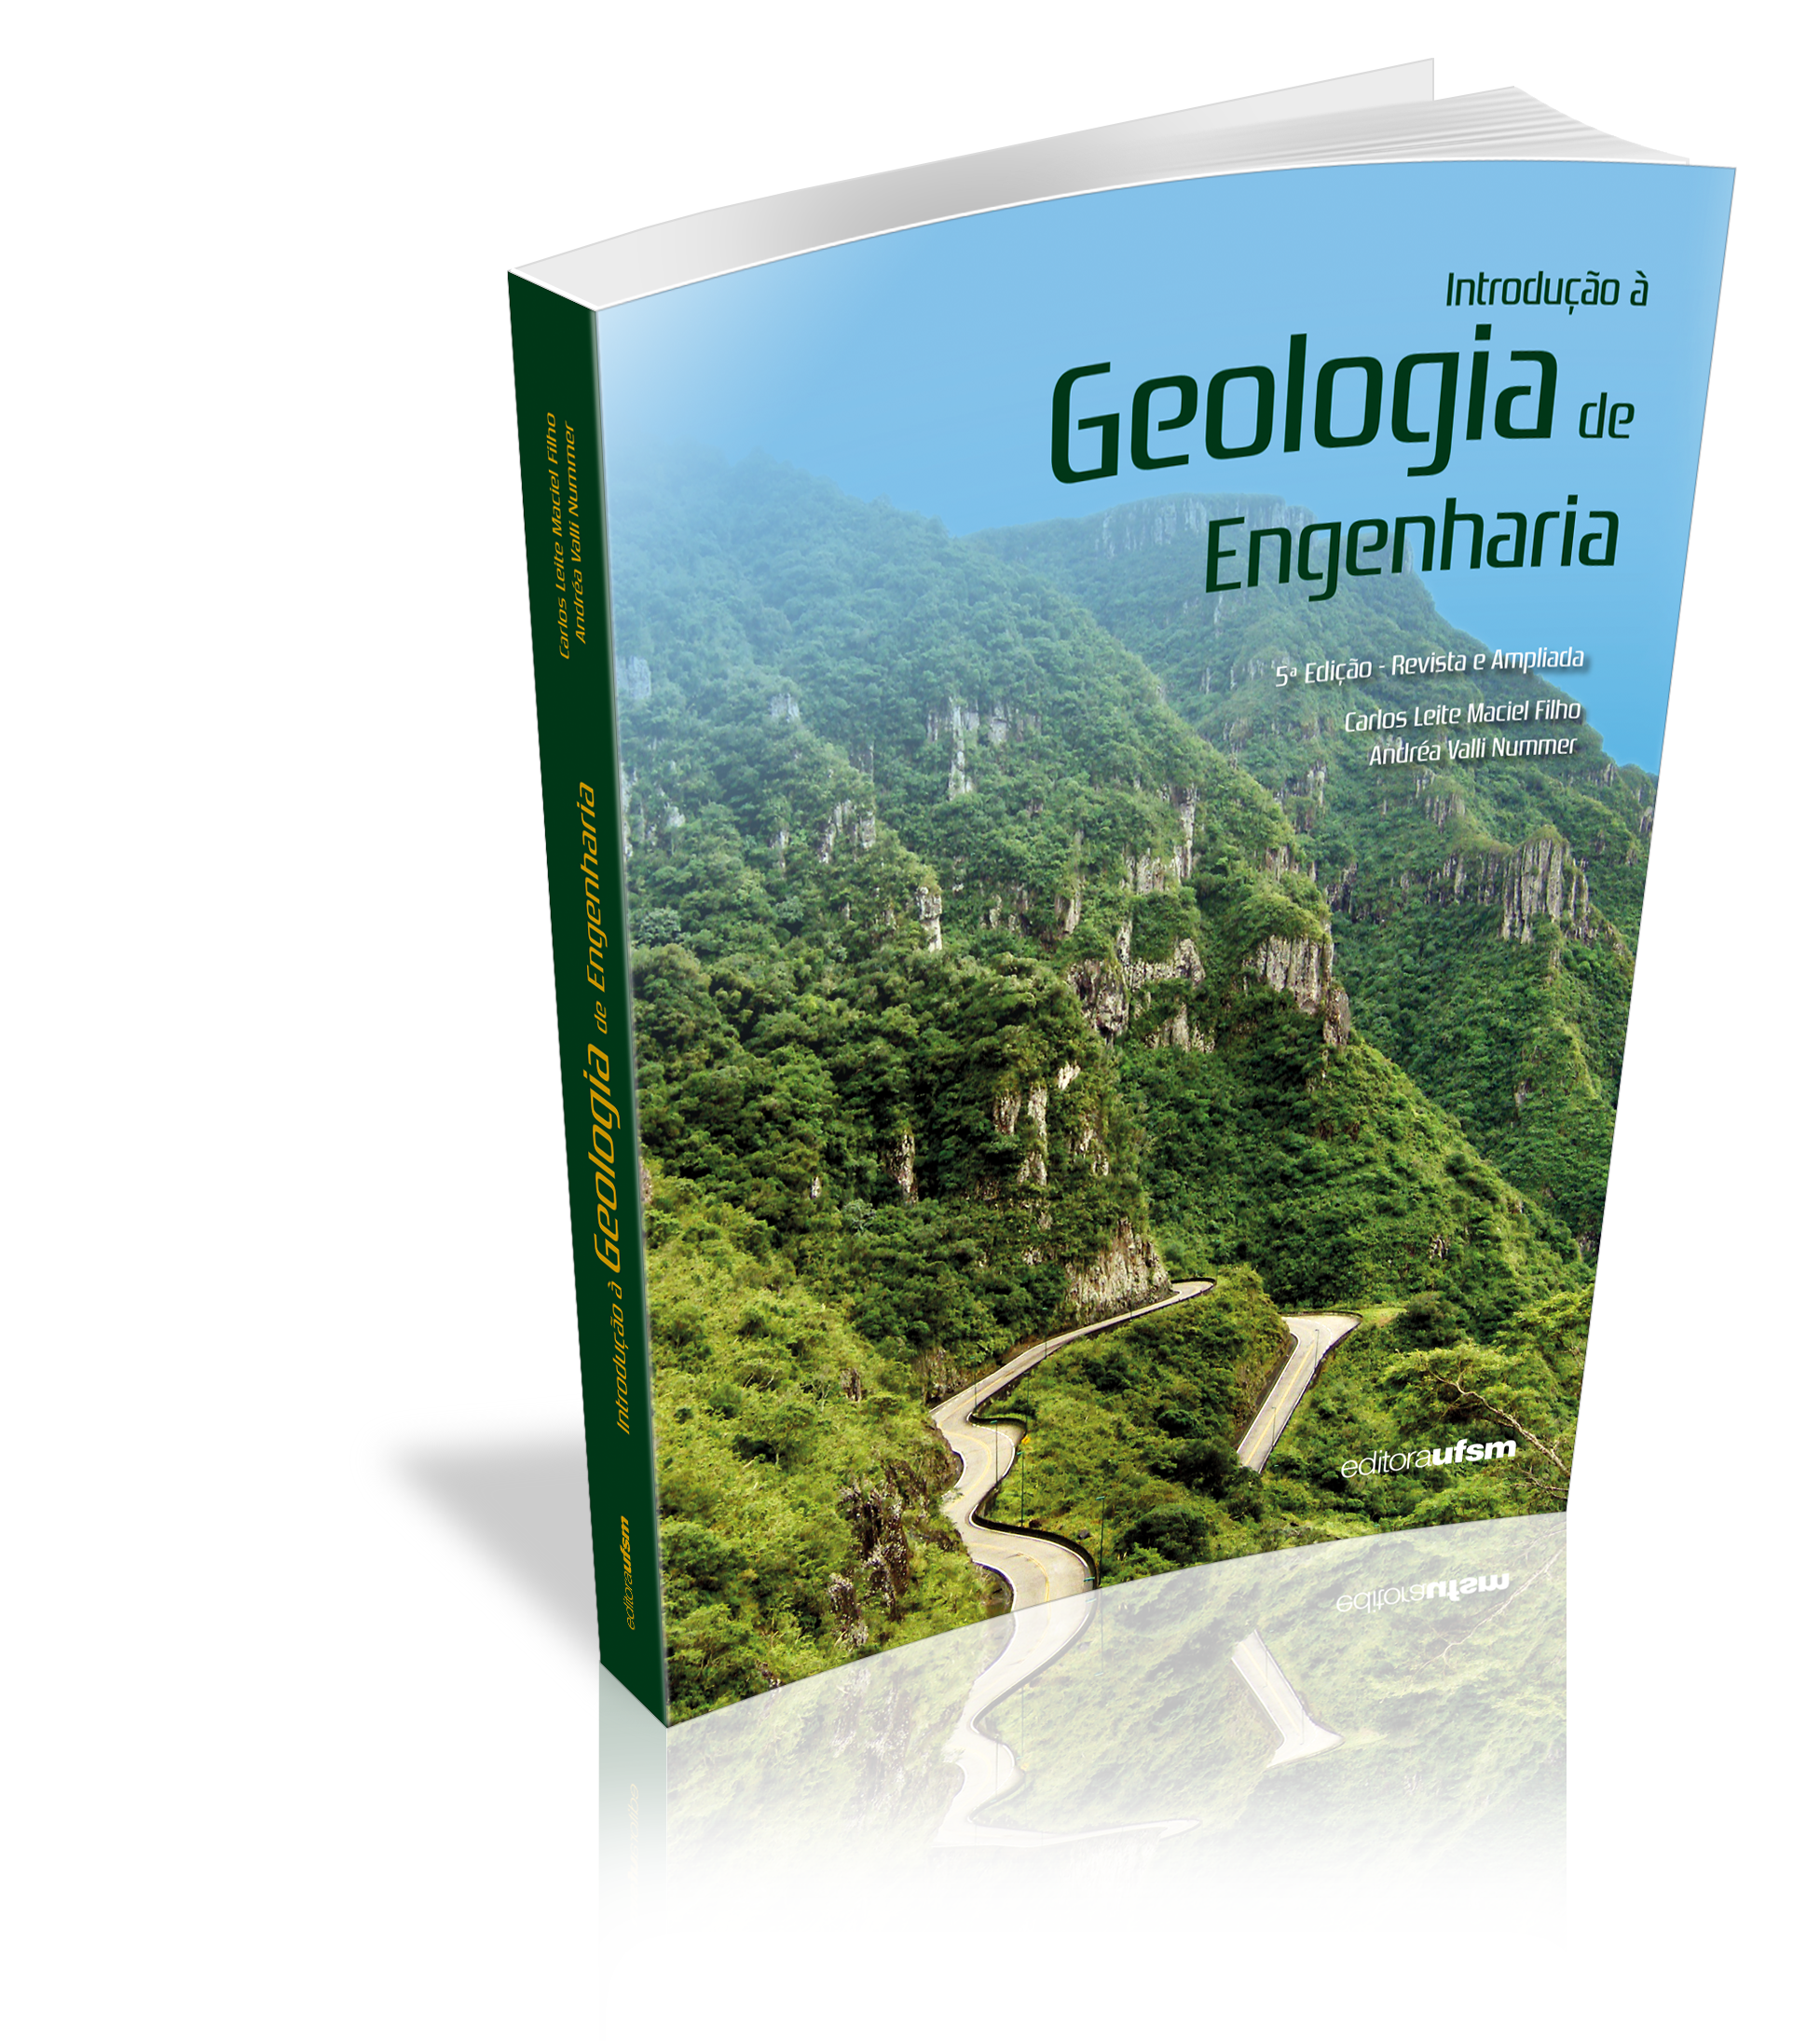 Capa do livro Introdução à Geologia de Engenharia - 5ª Edição - Revista e Ampliada